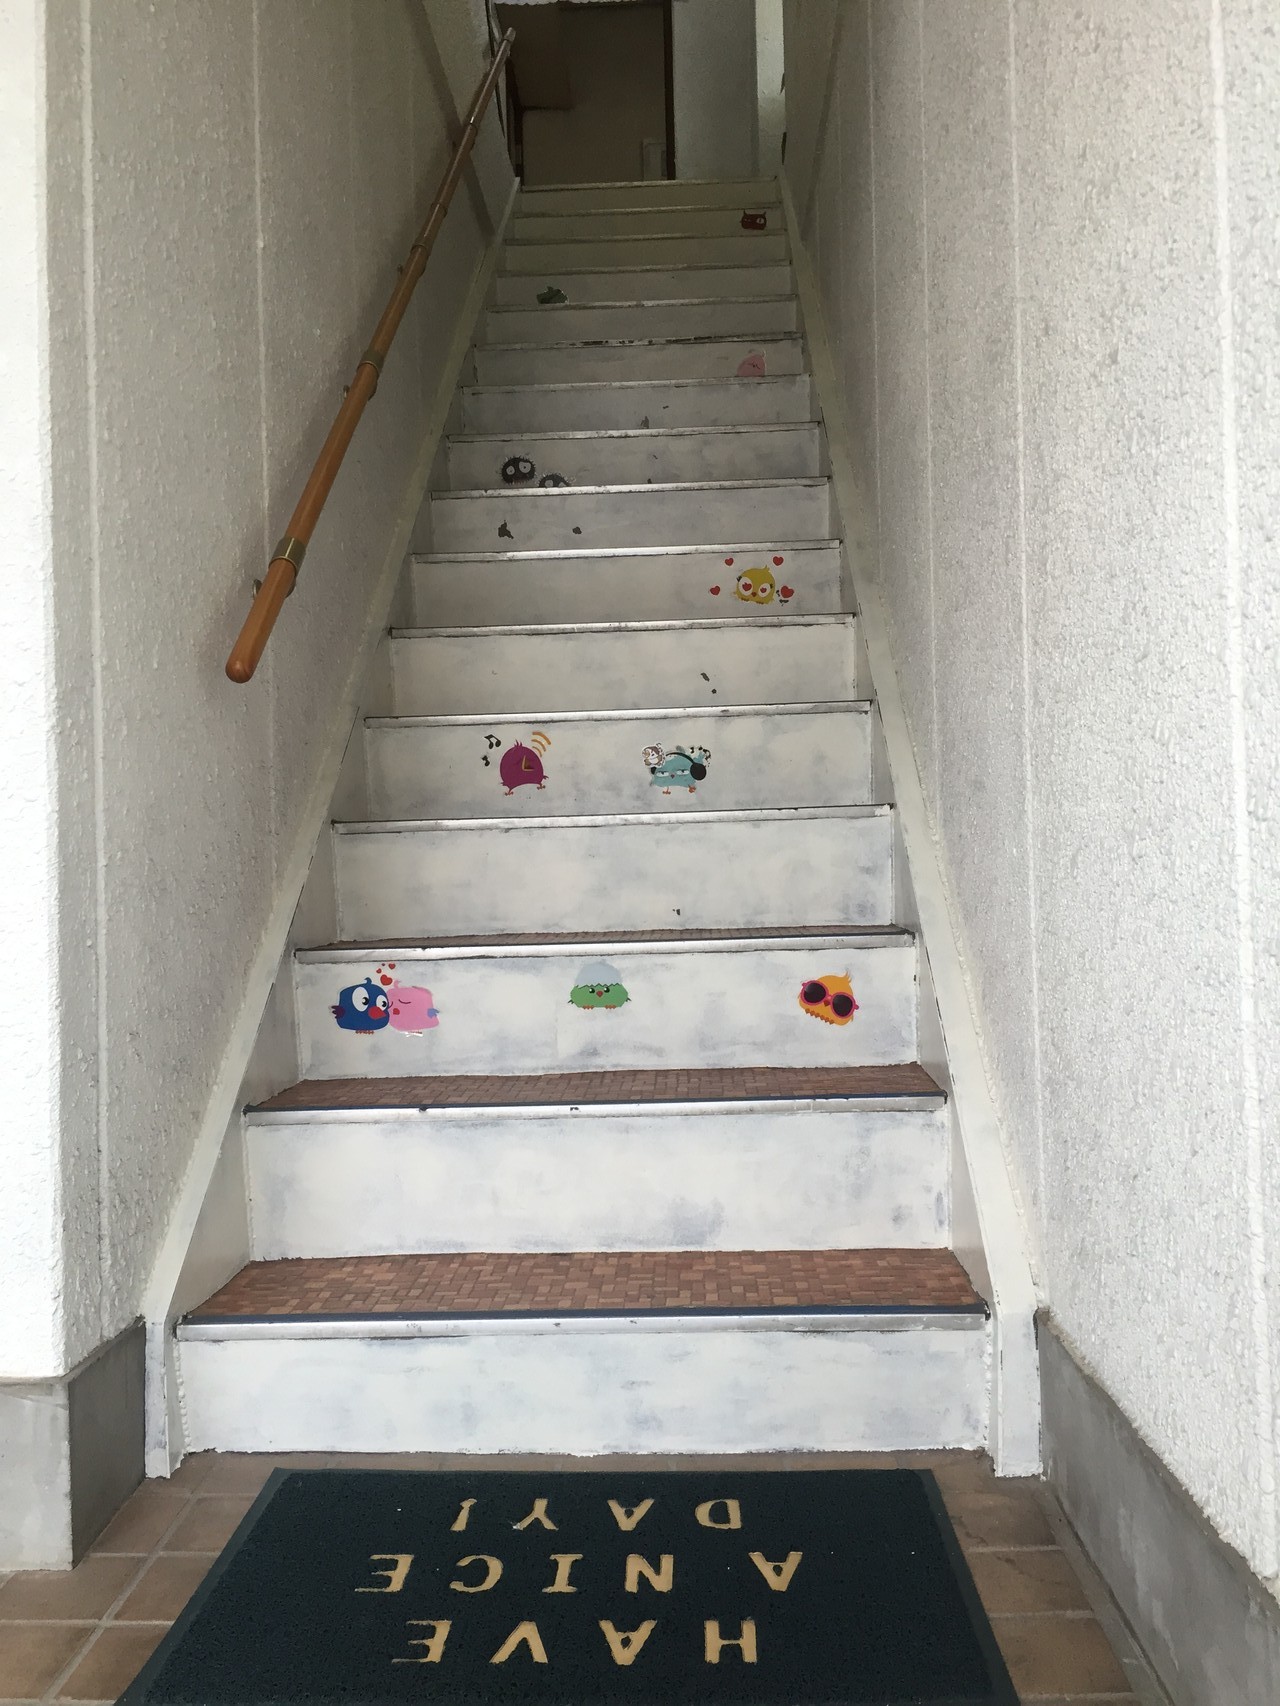 階段には何がいるかな？昇るときも降りるときも探してみて下さい。